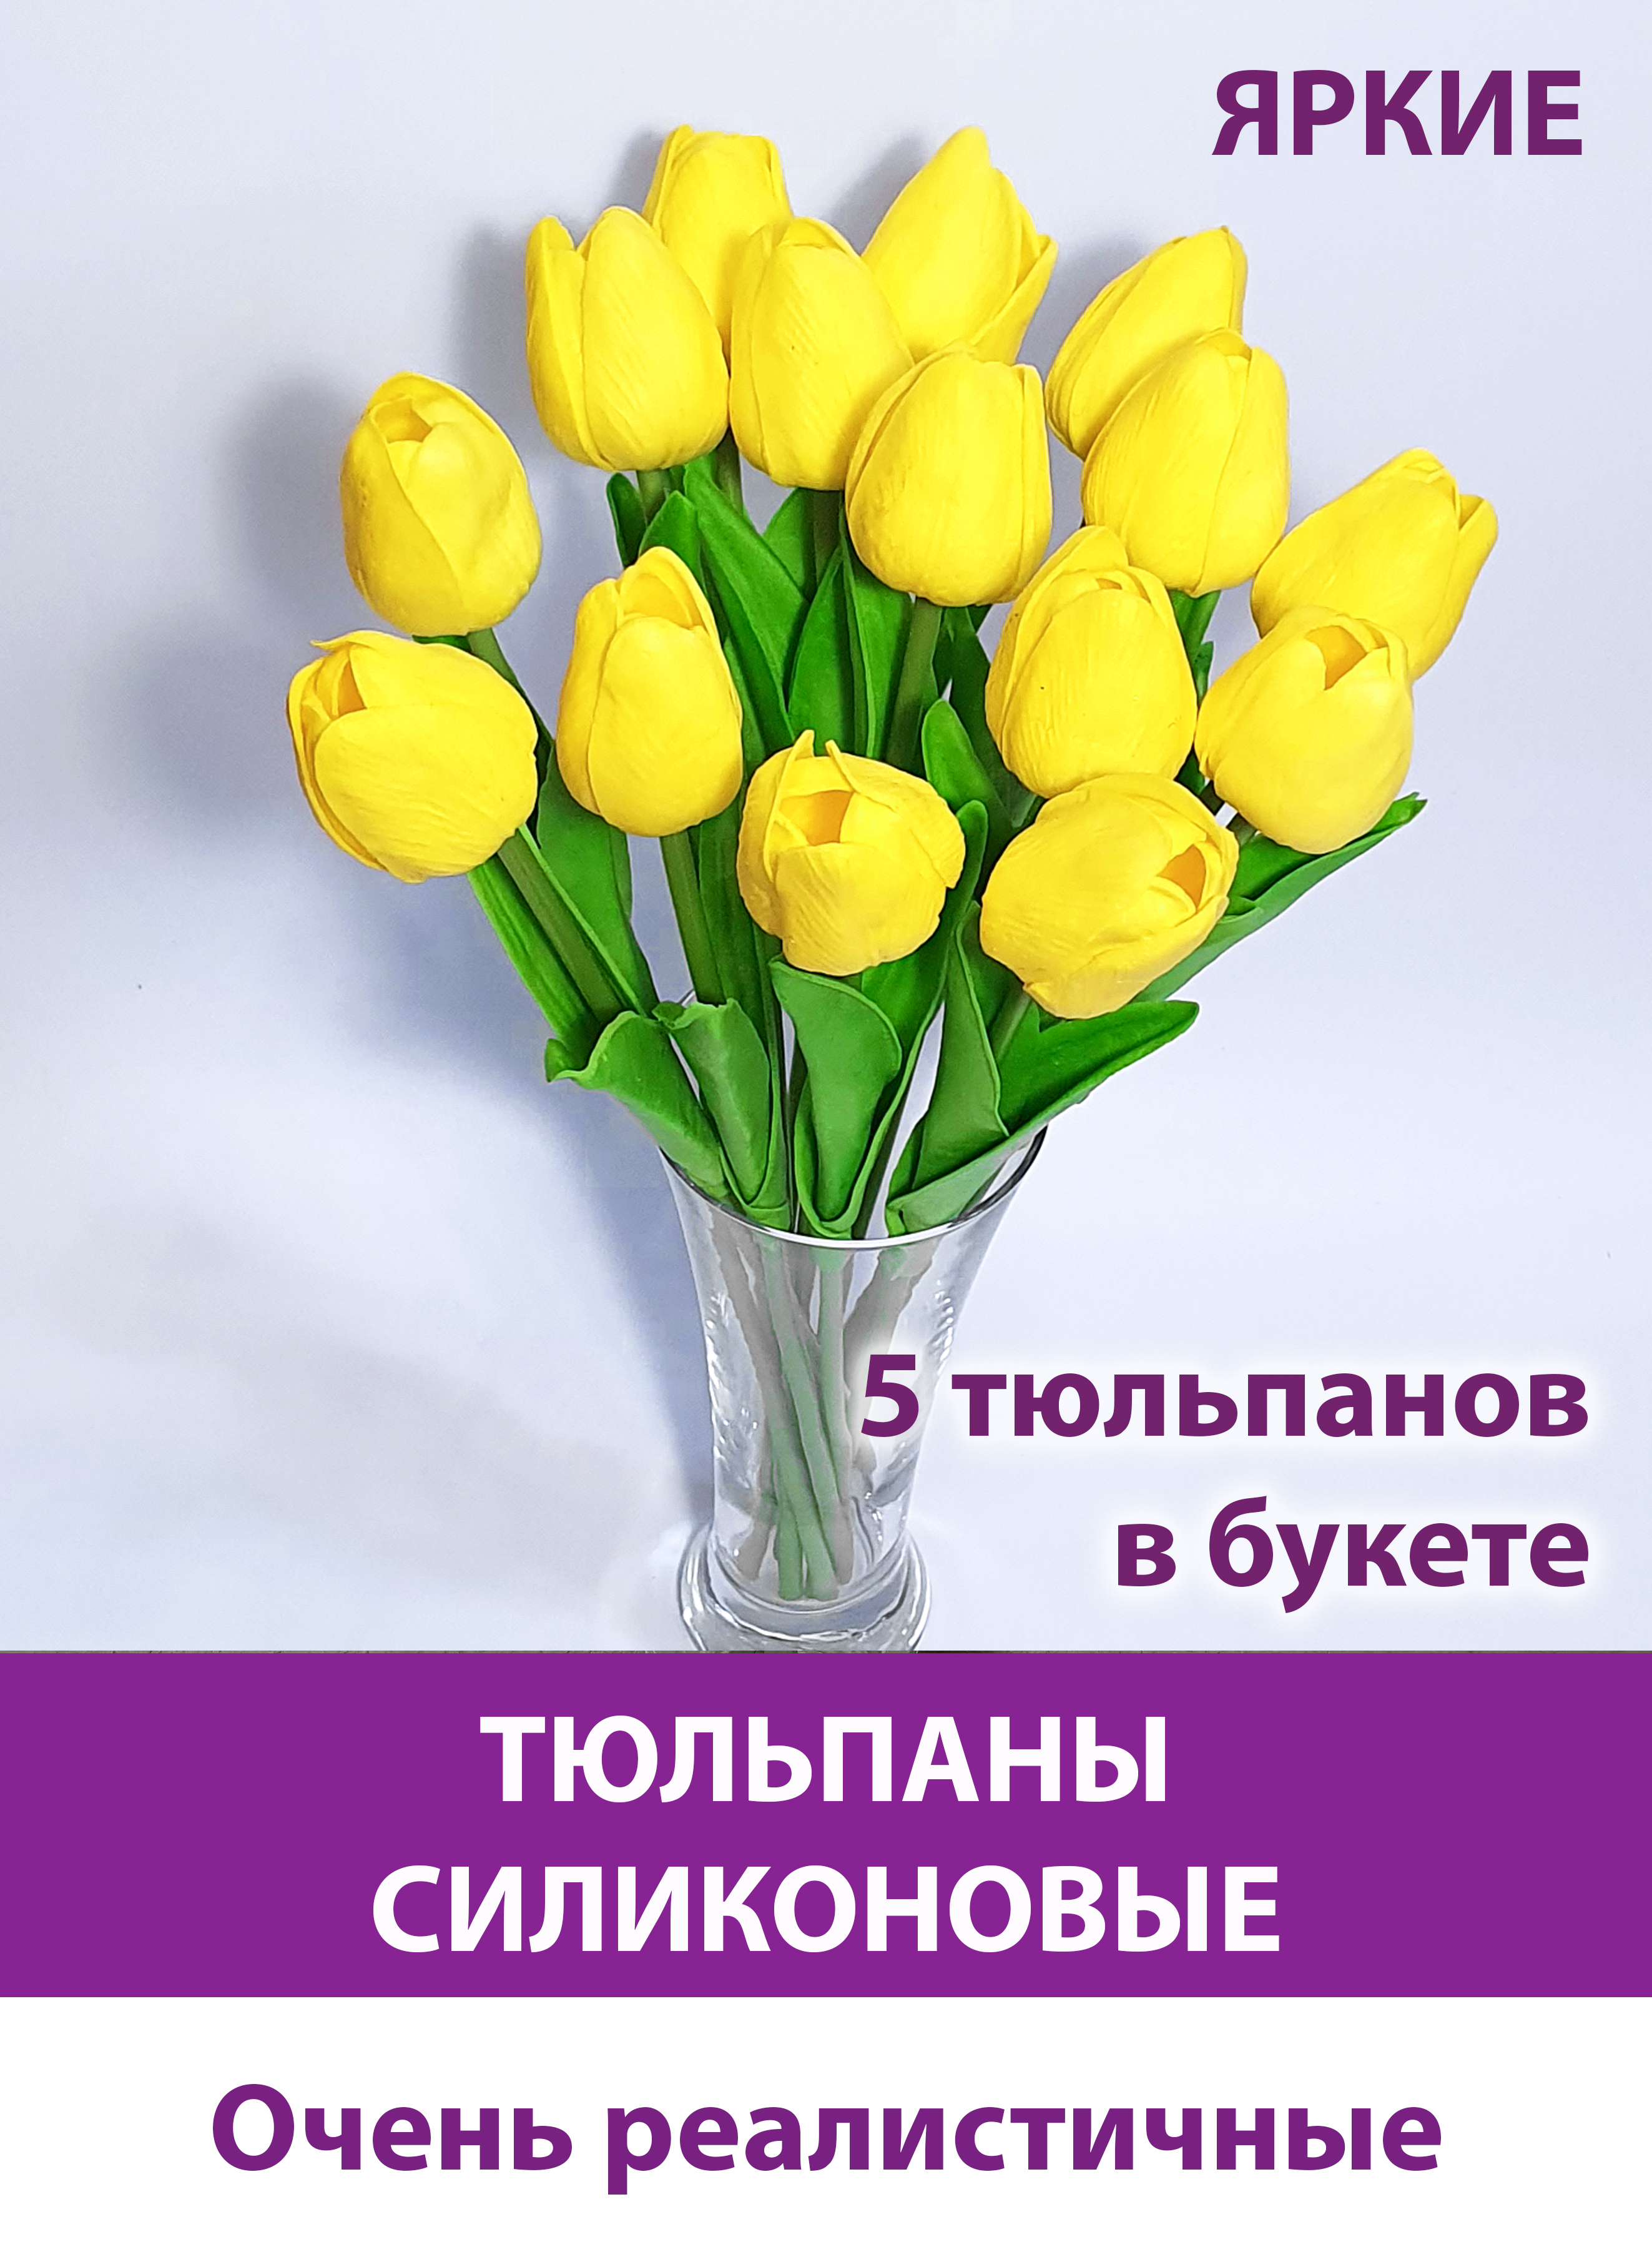 Сорта красно-желтых тюльпанов: подборки сортов с фотографиями и отзывами - купить в интернет-магазине